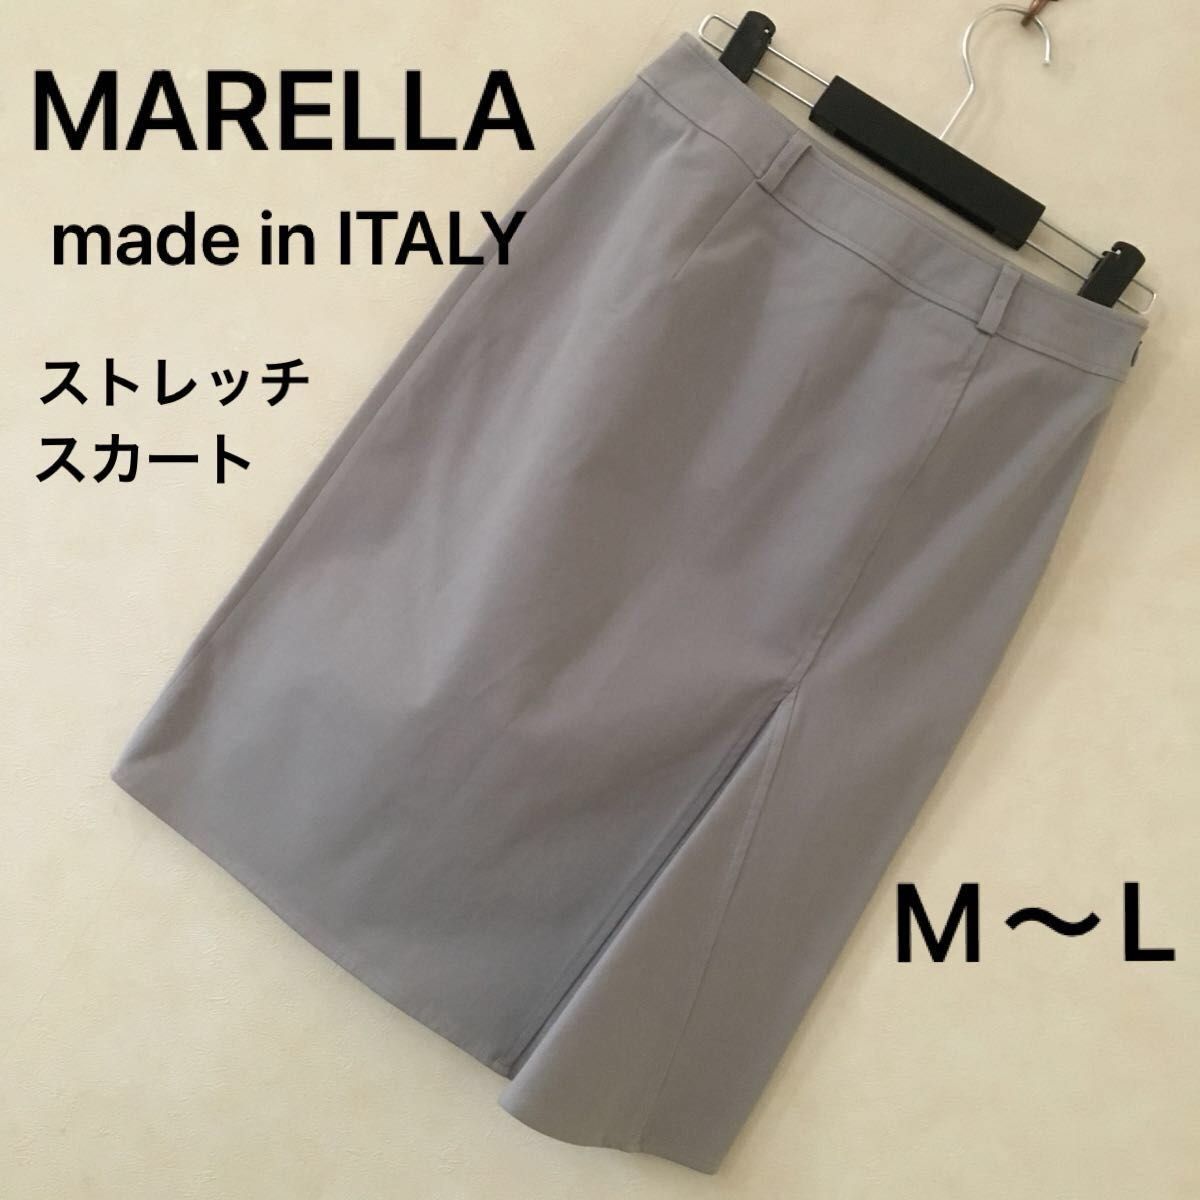 ペニーブラック　マレーラ　ストレッチスカートMARELLA made in ITALY サイズ40 (M〜L)